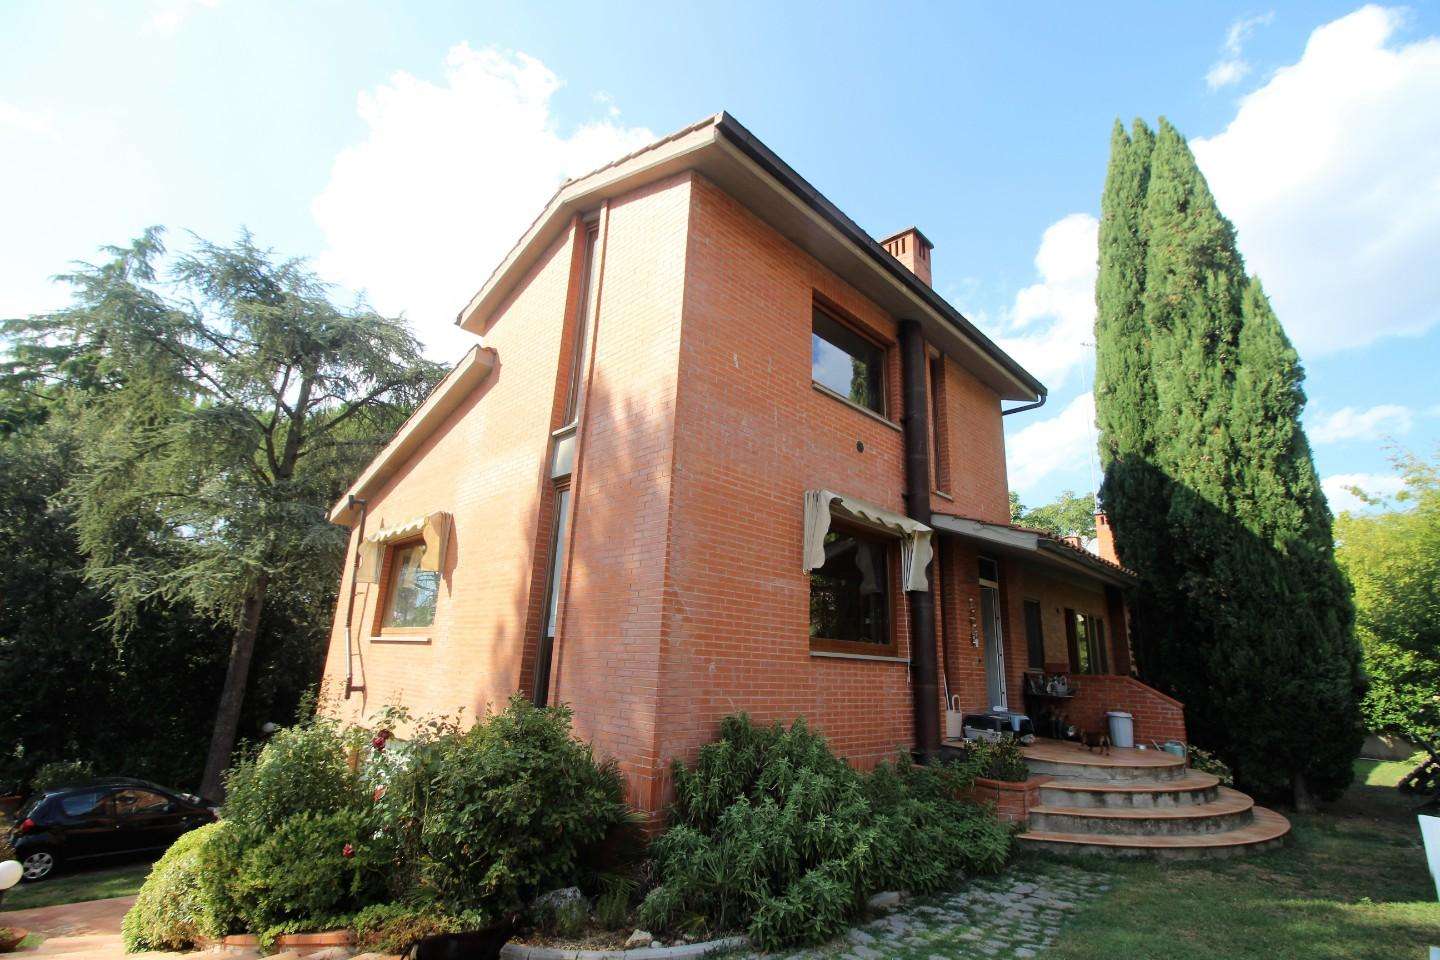 Porzione di casa in Vendita a Siena Str. del Petriccio e Belriguardo, 53100